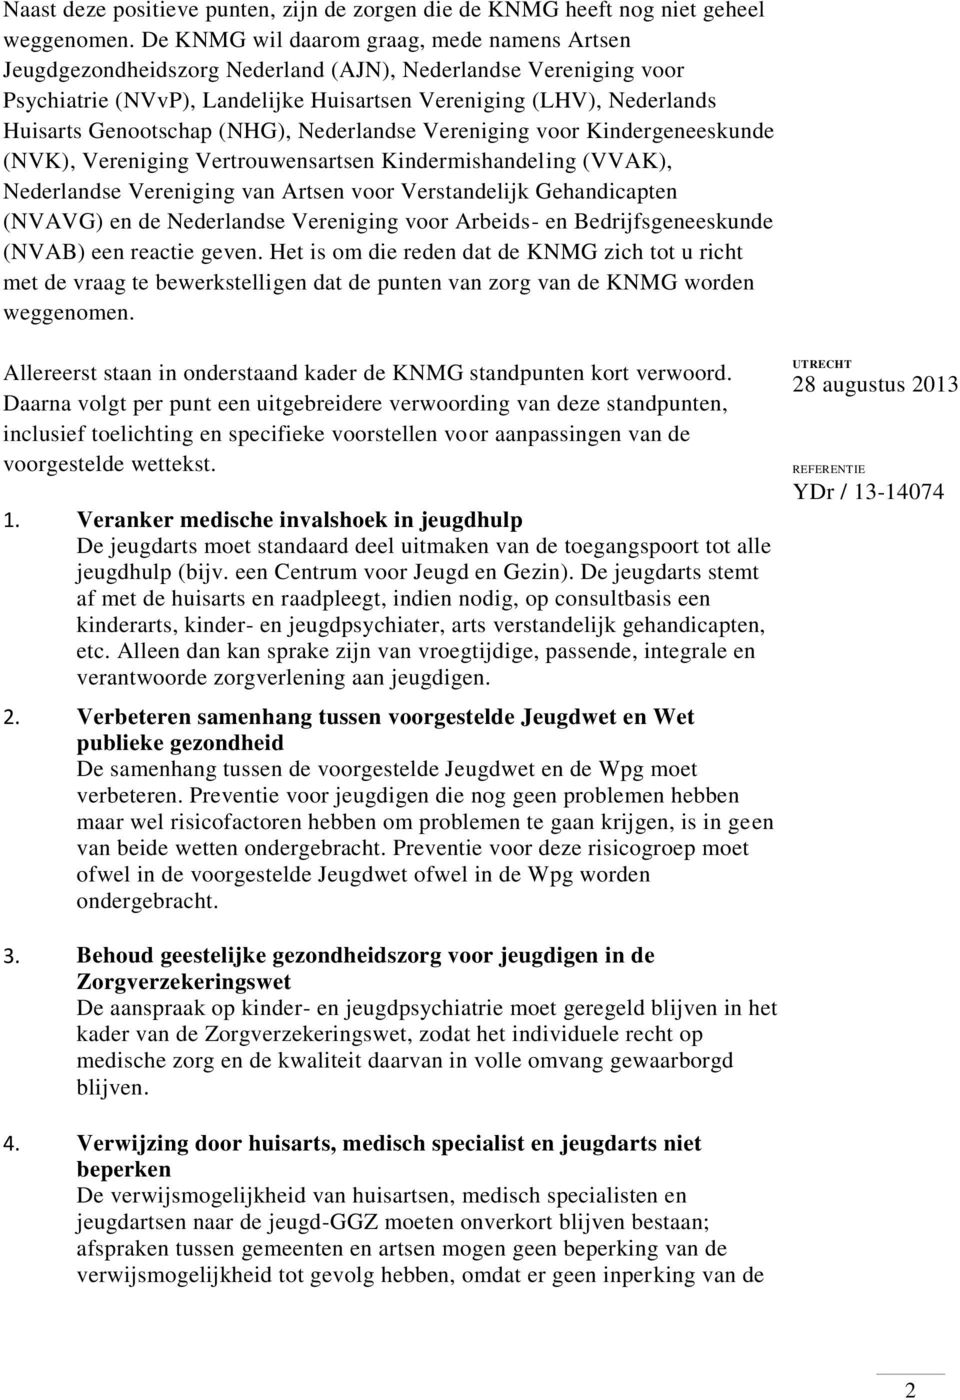 Genootschap (NHG), Nederlandse Vereniging voor Kindergeneeskunde (NVK), Vereniging Vertrouwensartsen Kindermishandeling (VVAK), Nederlandse Vereniging van Artsen voor Verstandelijk Gehandicapten